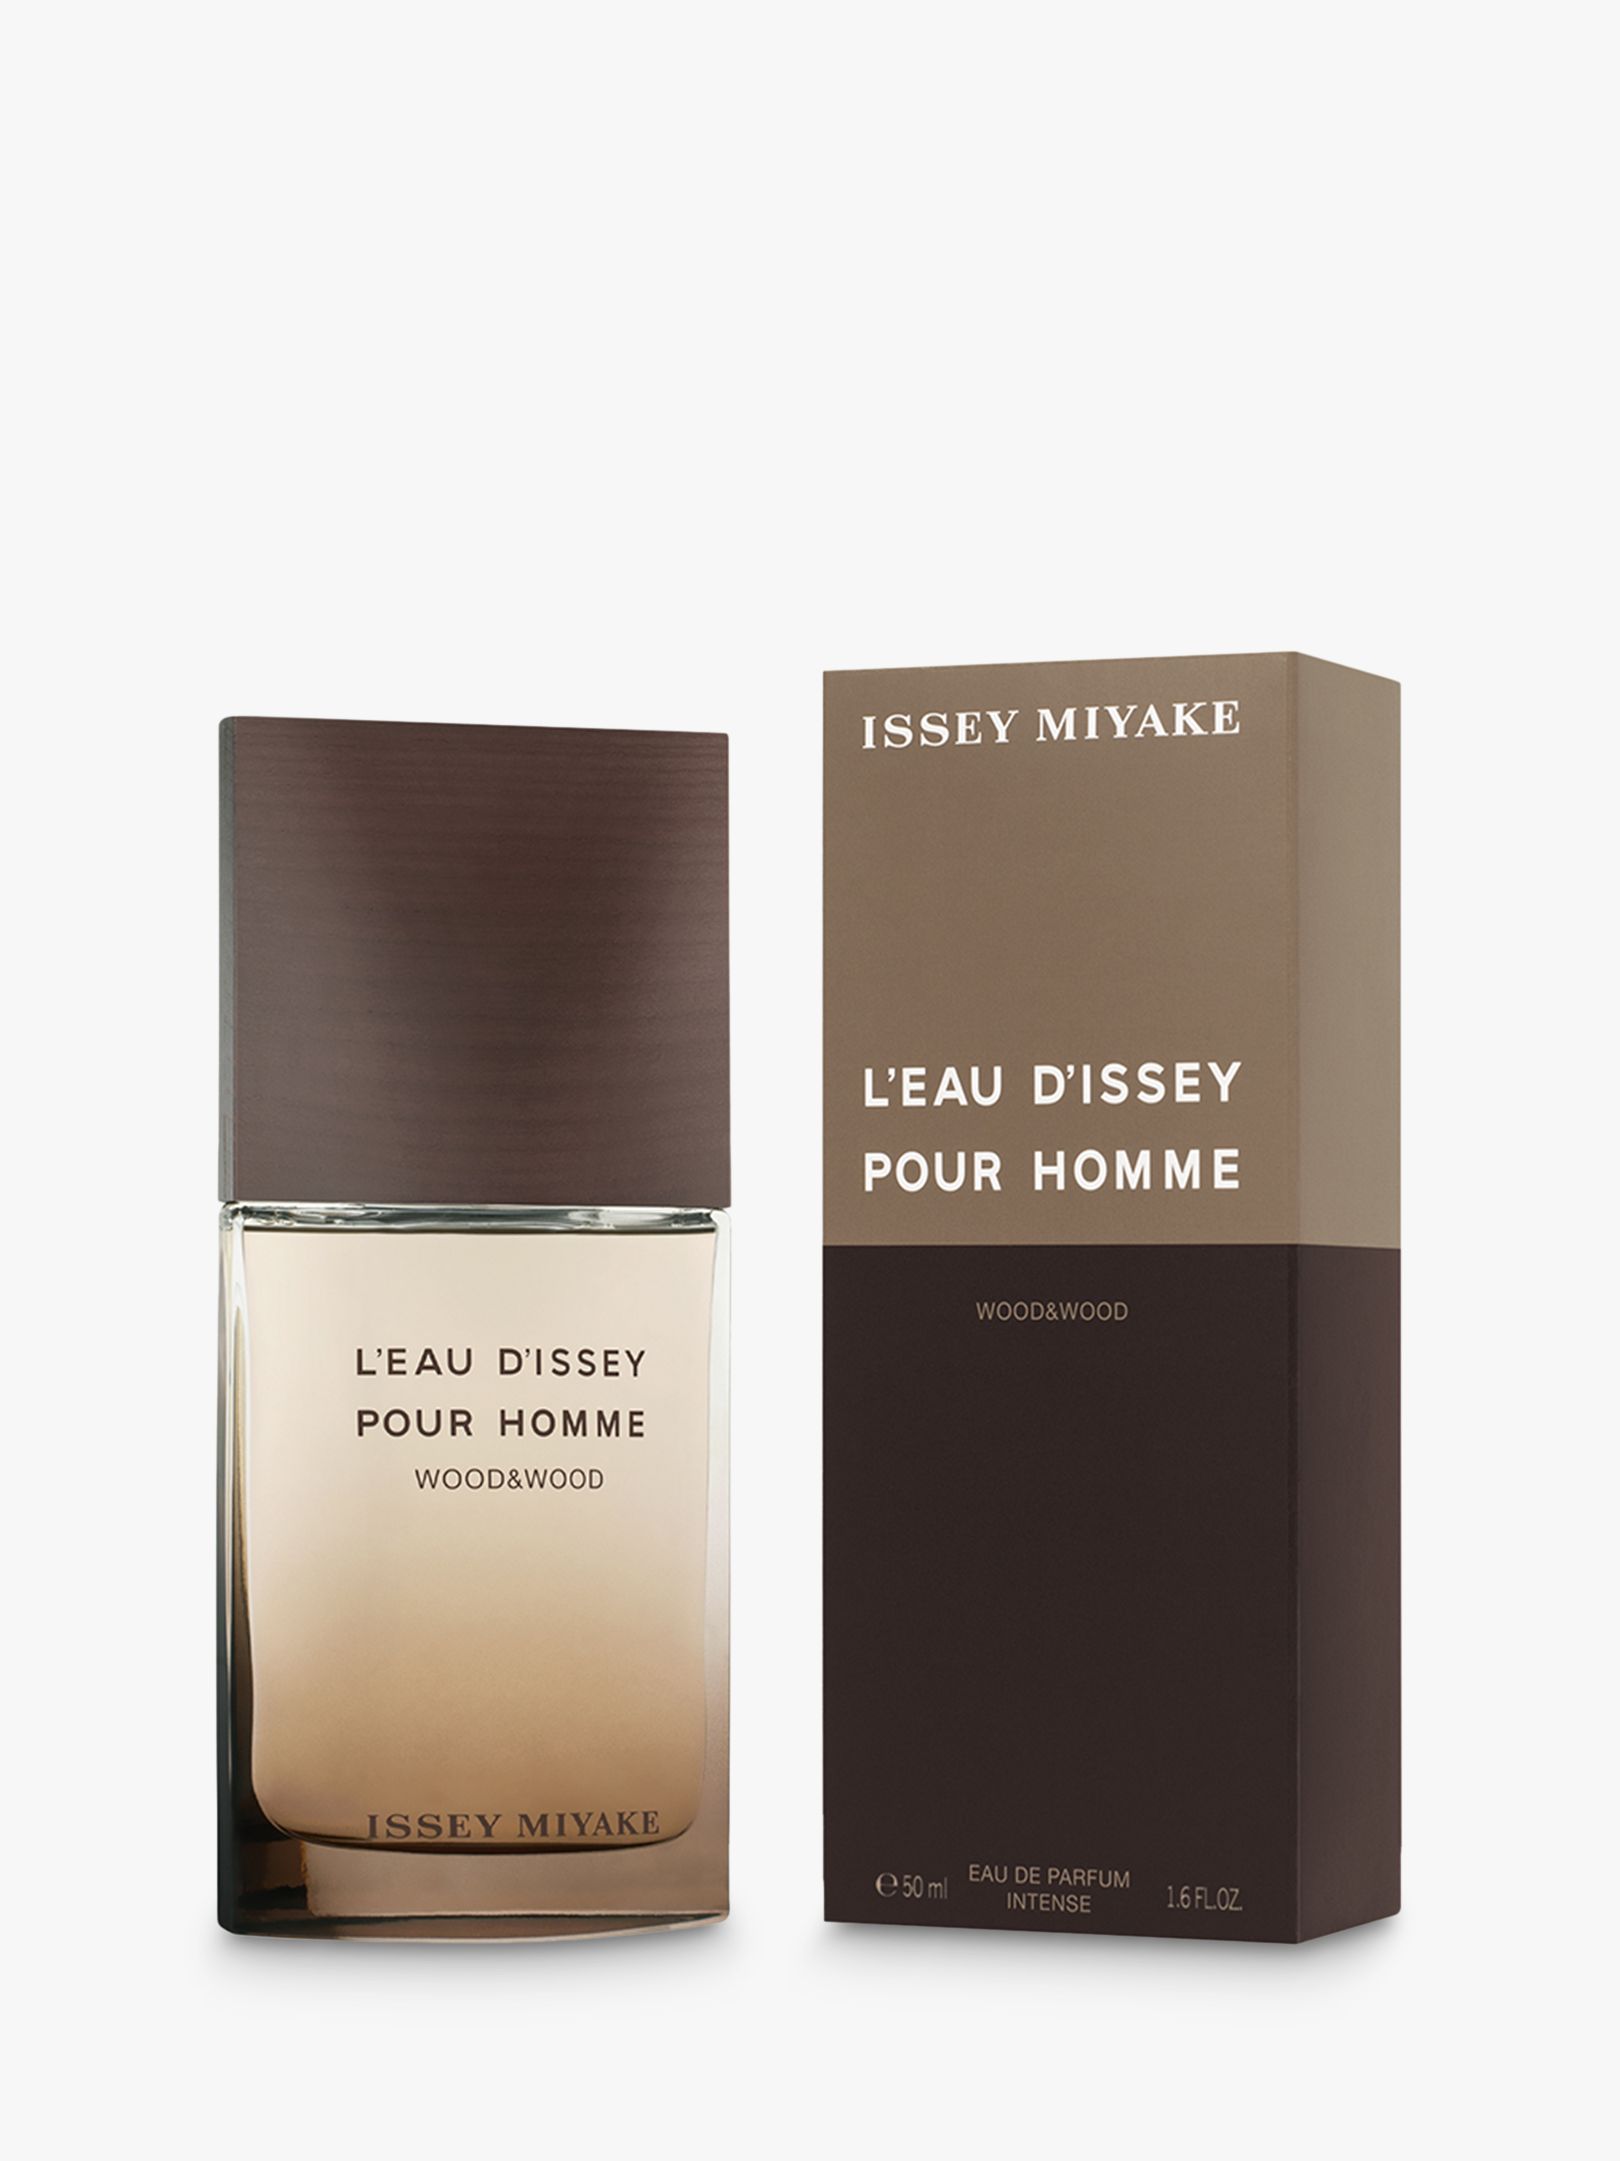 Issey Miyake L'Eau d'Issey Pour Homme Wood & Wood Eau de Parfum Intense, 50ml 2